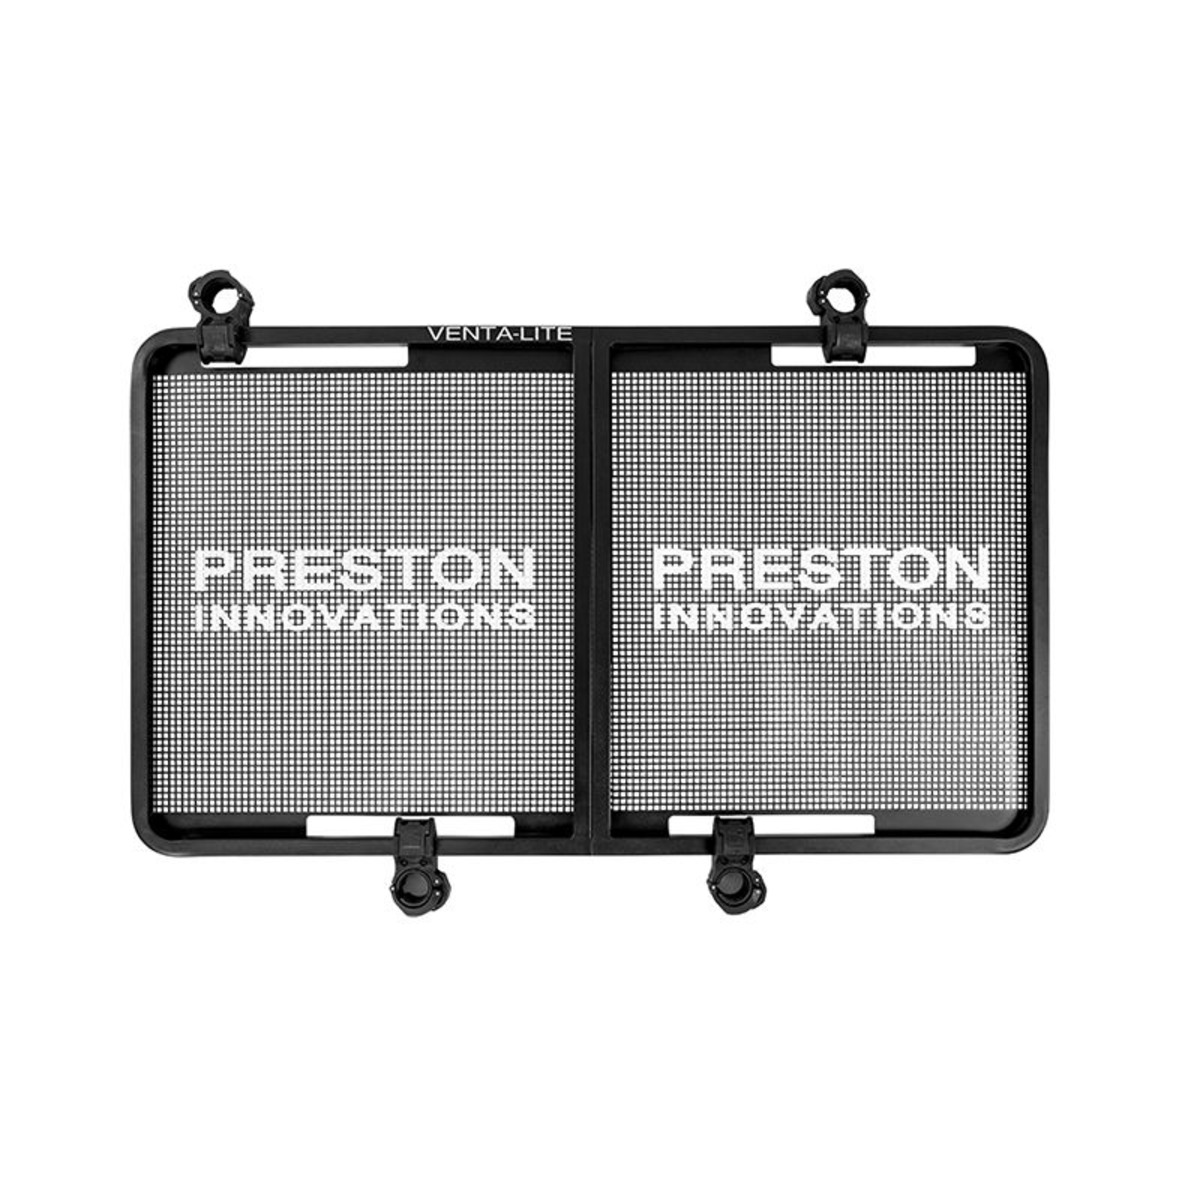 Preston Venta LiteSide Tray - XL